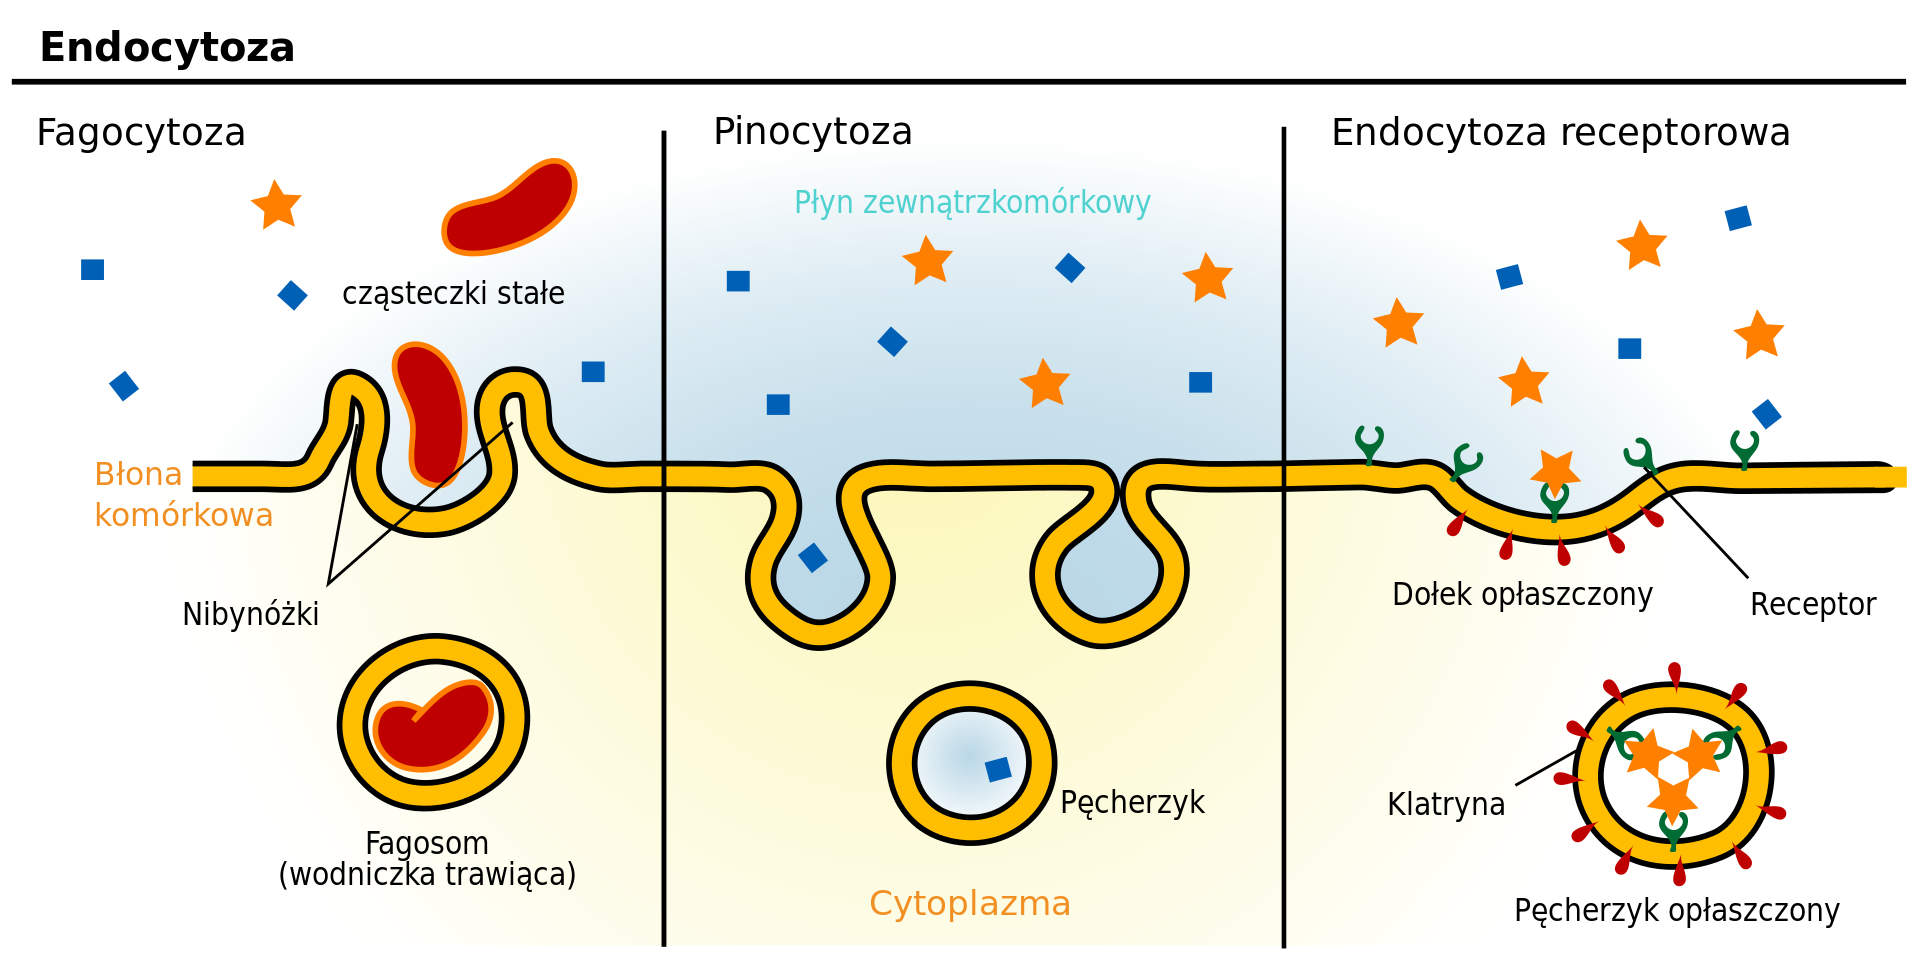 Fagocytoza, pinocytoza, endocytoza receptorowa